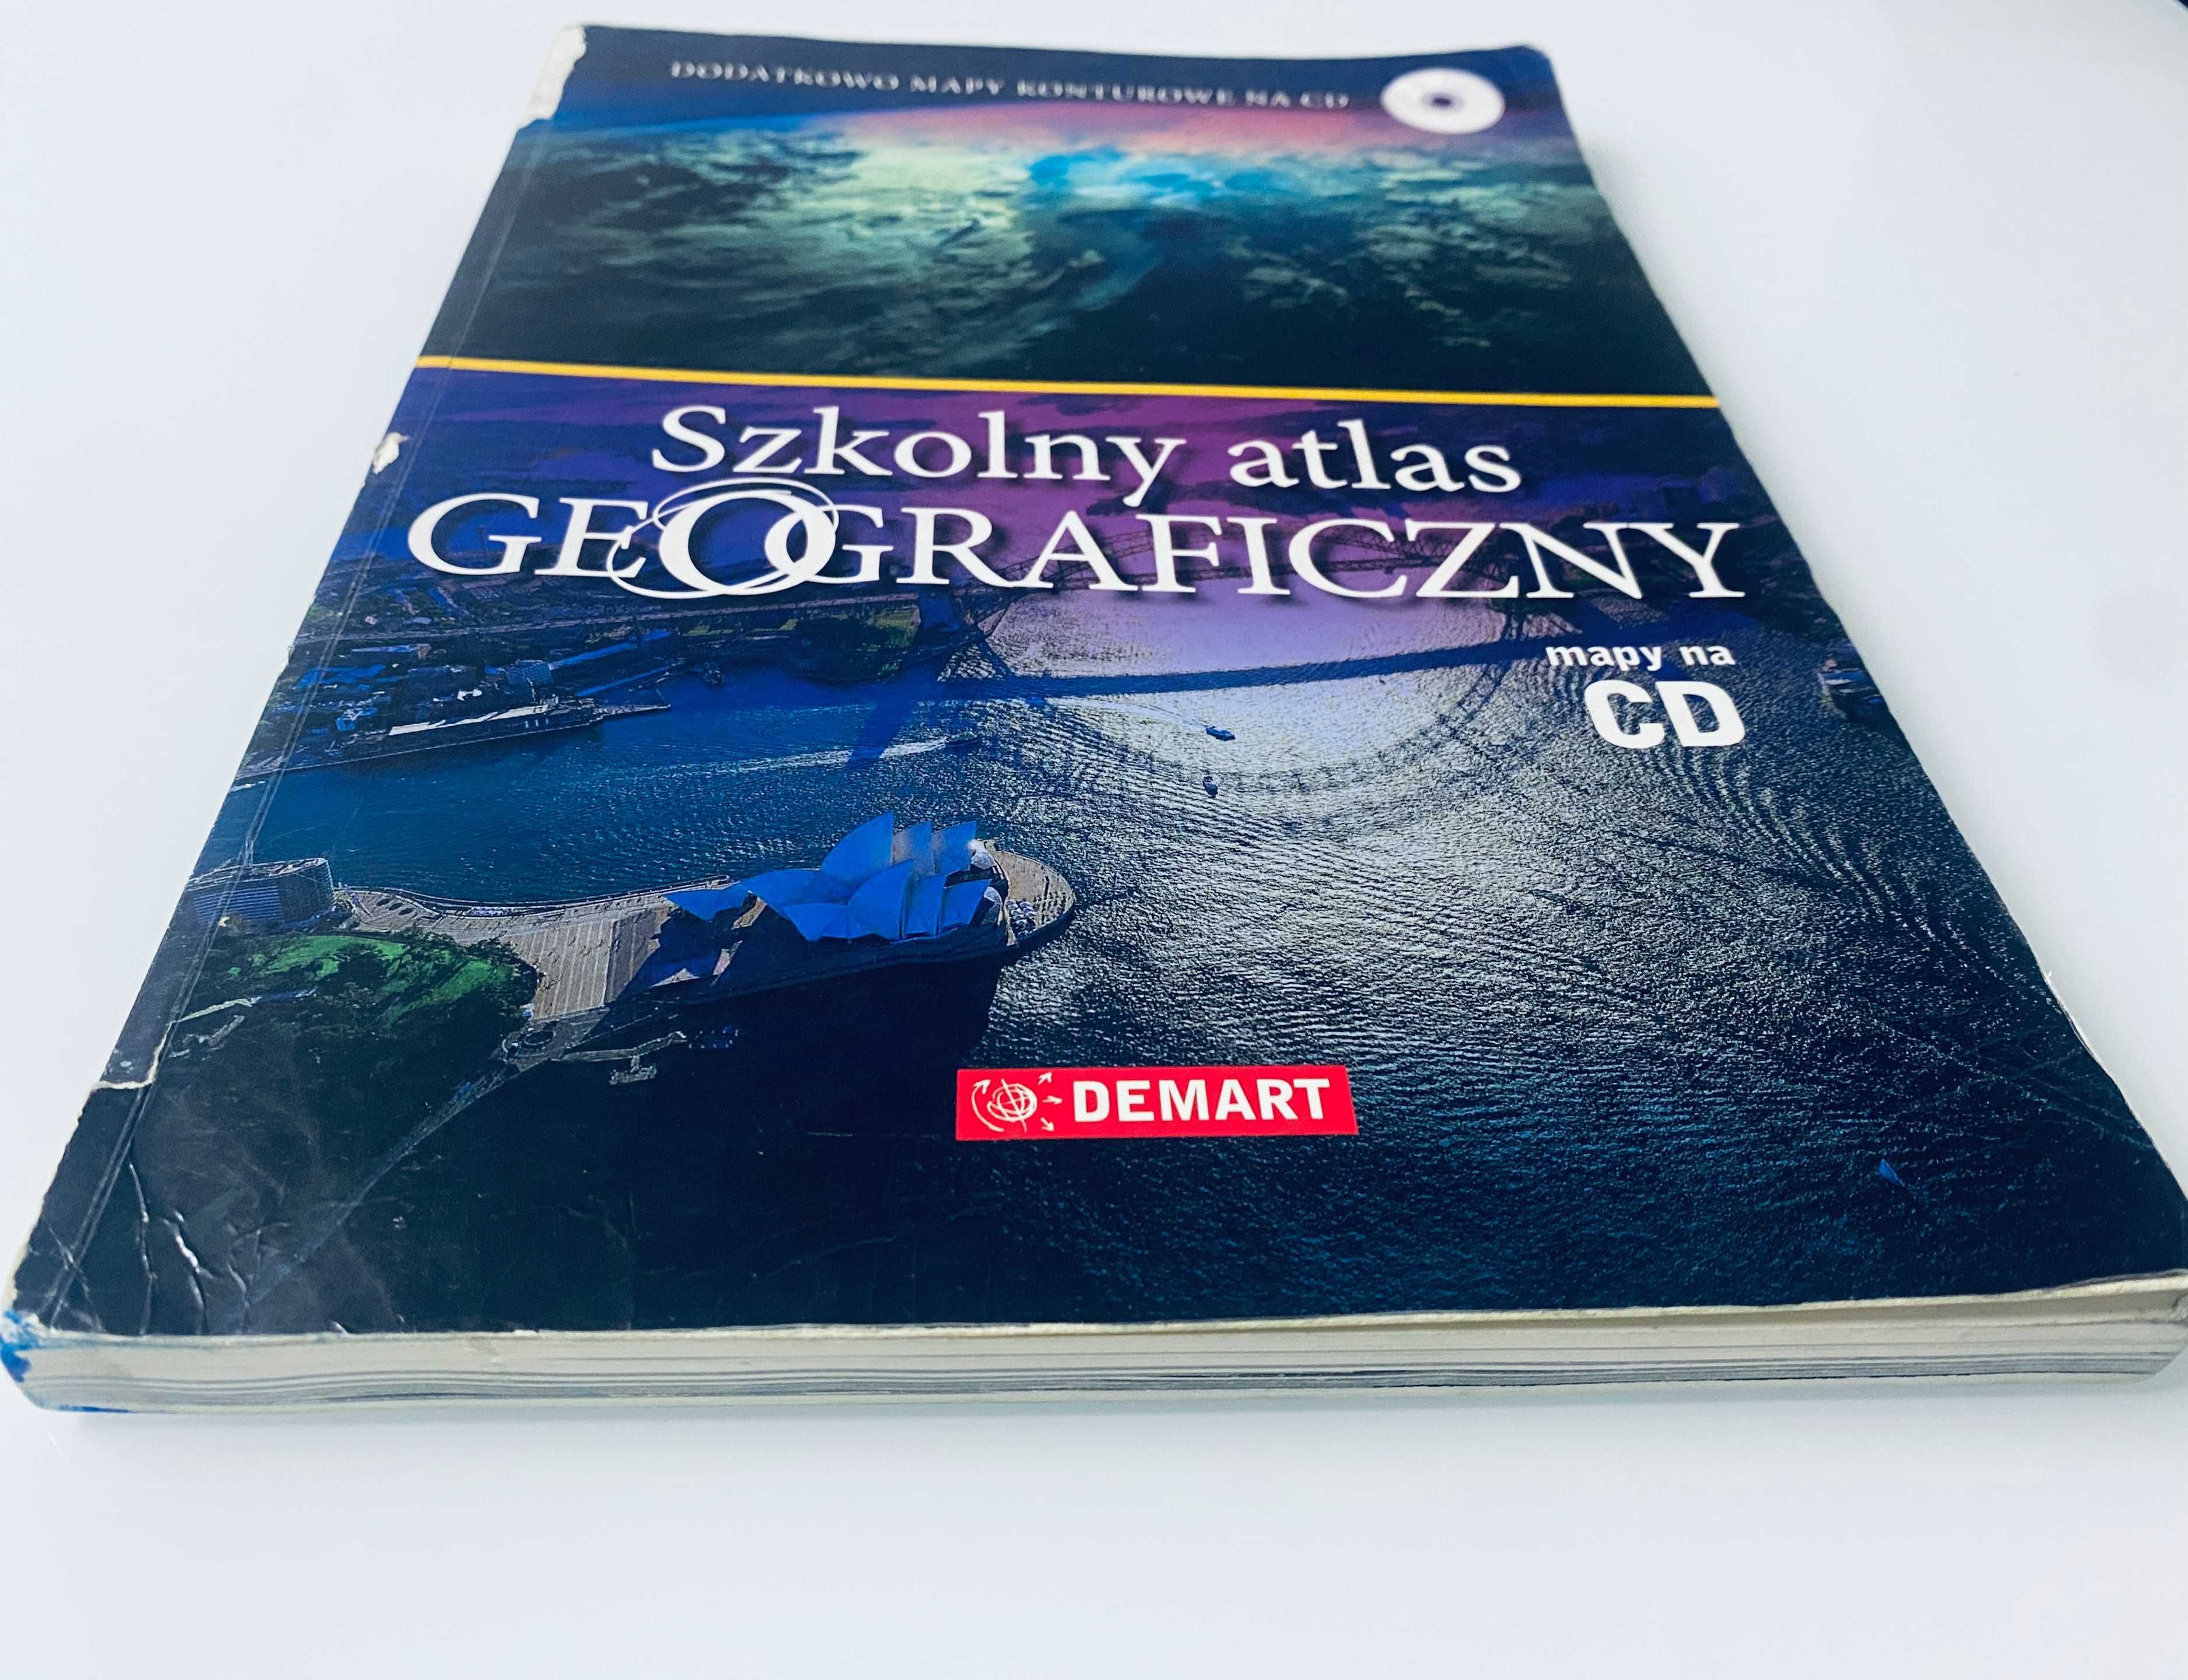 Szkolny atlas geograficzny - Demart